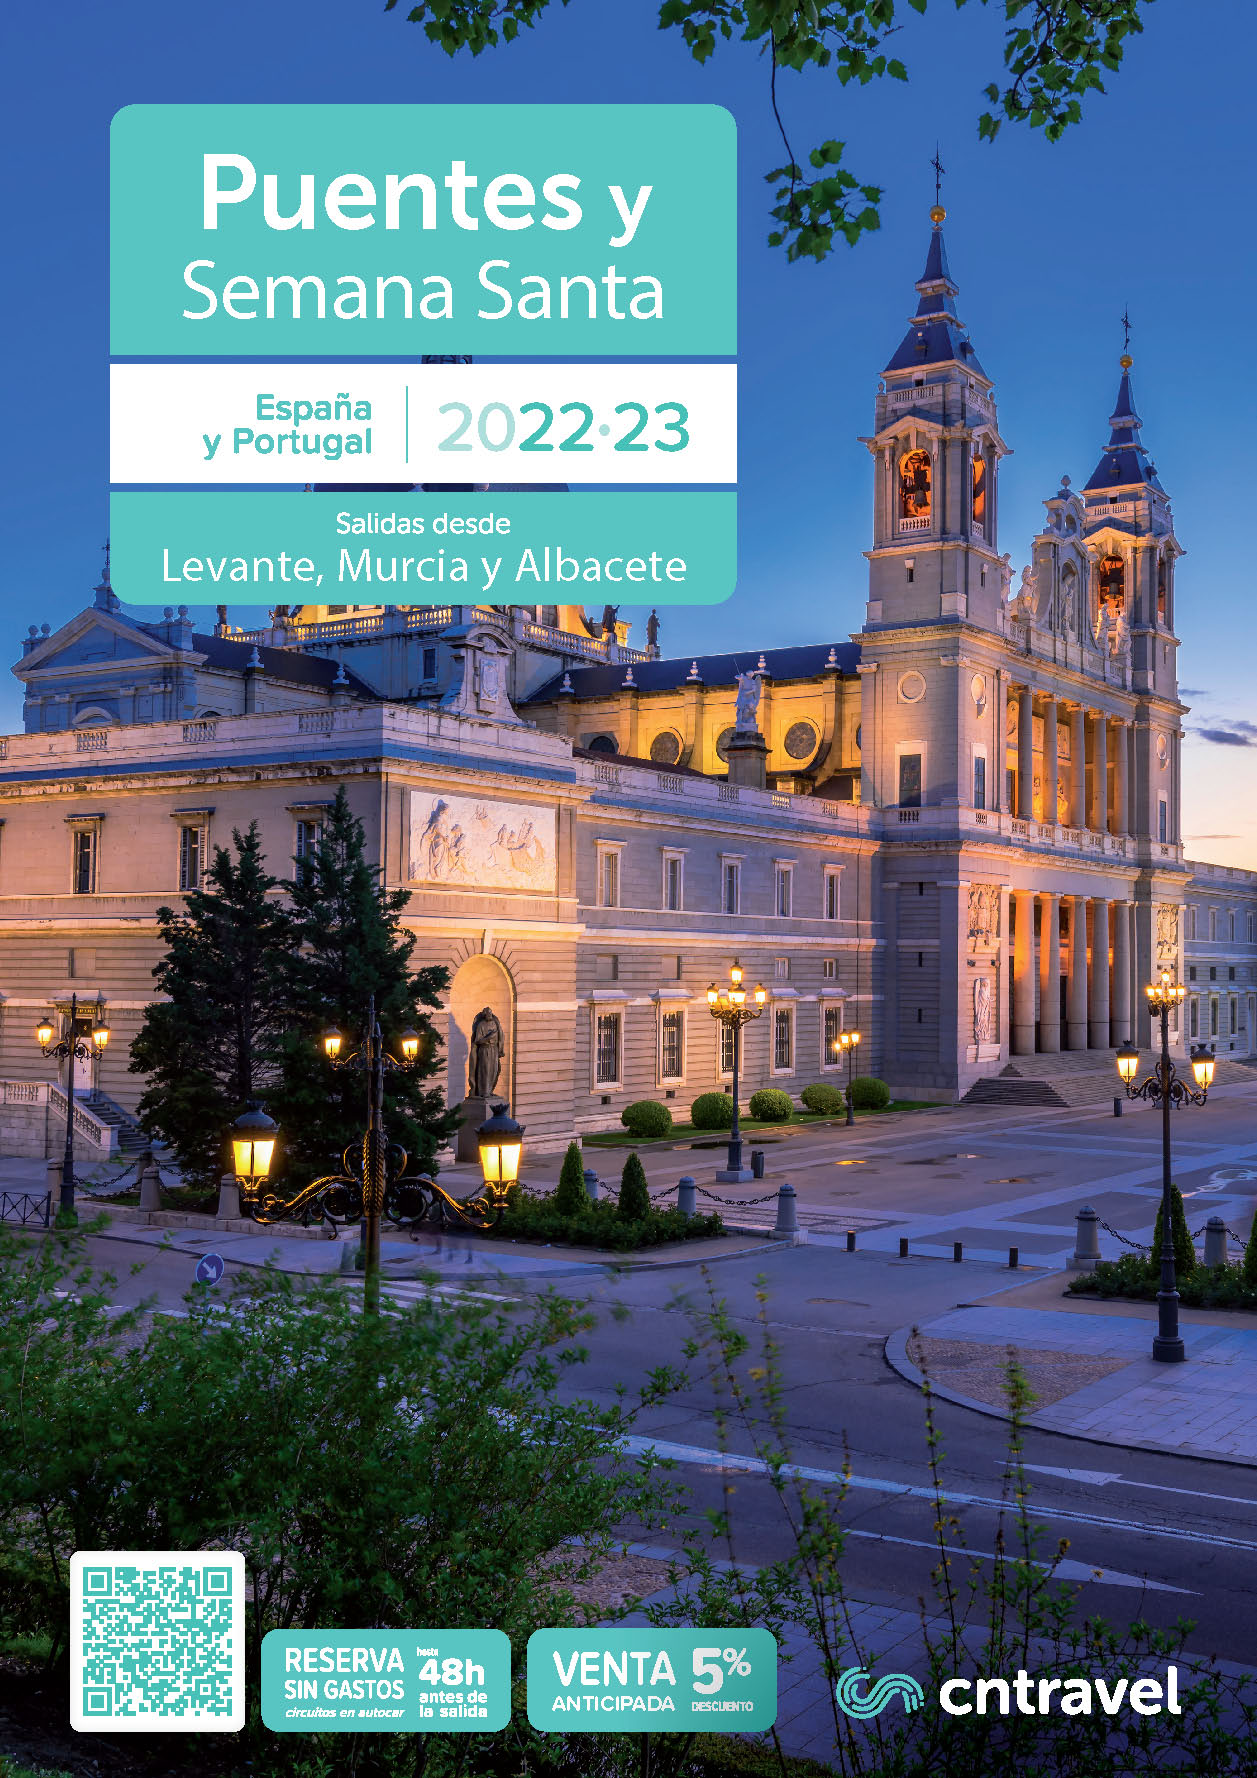 Catalogo CN Travel Viajes en Puentes y Semana Santa 2022-2023 Espana y Portugal salidas desde Levante Murcia y Albacete